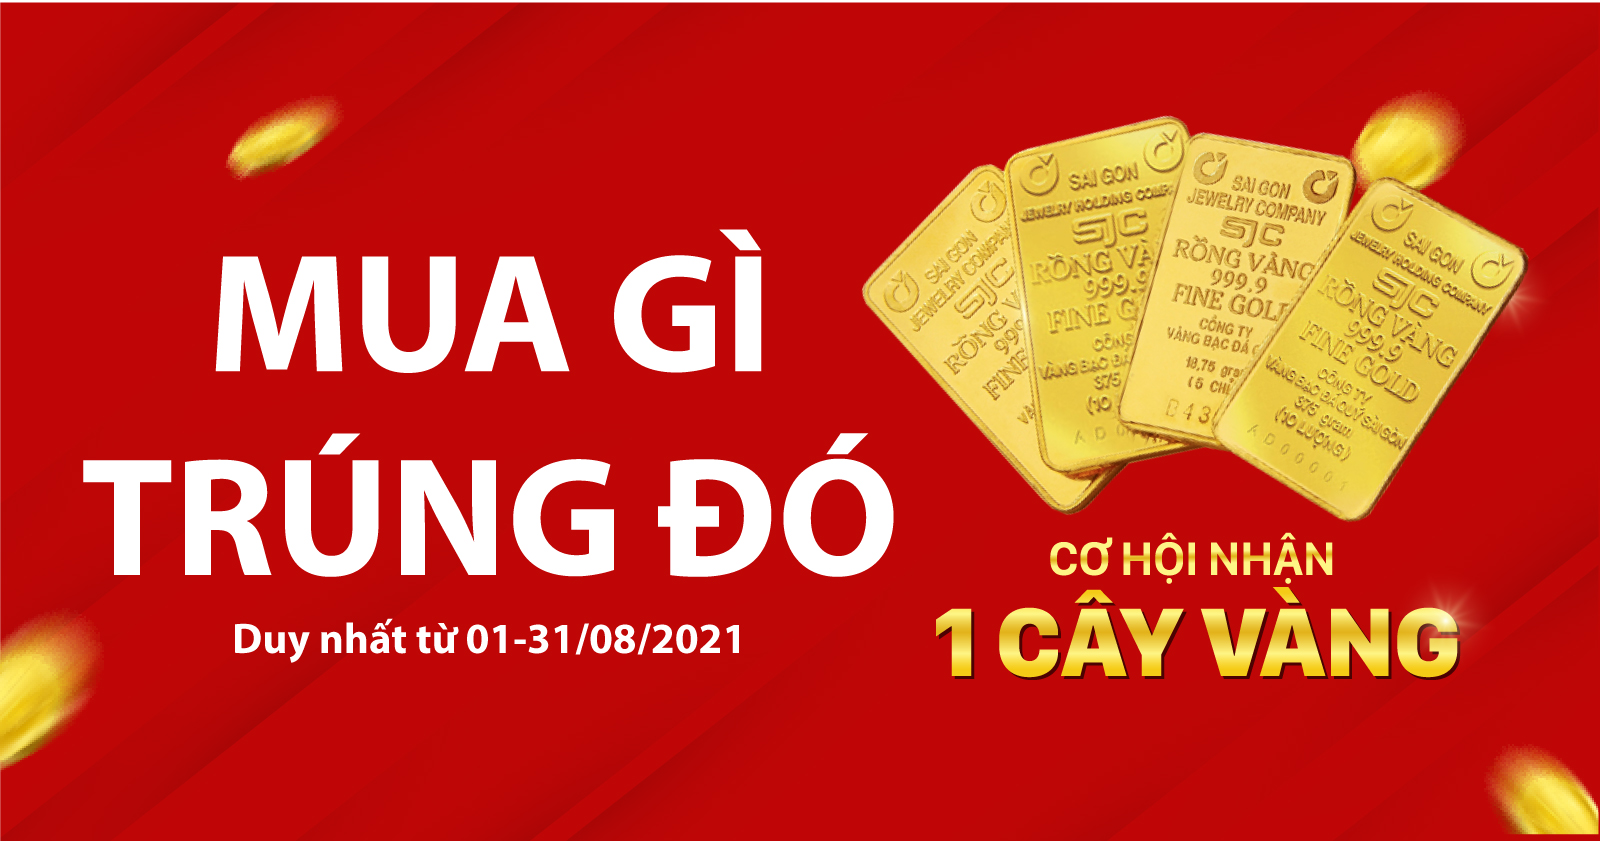 Mua Gì Trúng Đó Tháng 8 - Trúng Vàng 9999 - Trúng Voucher 1.000.000 VNĐ